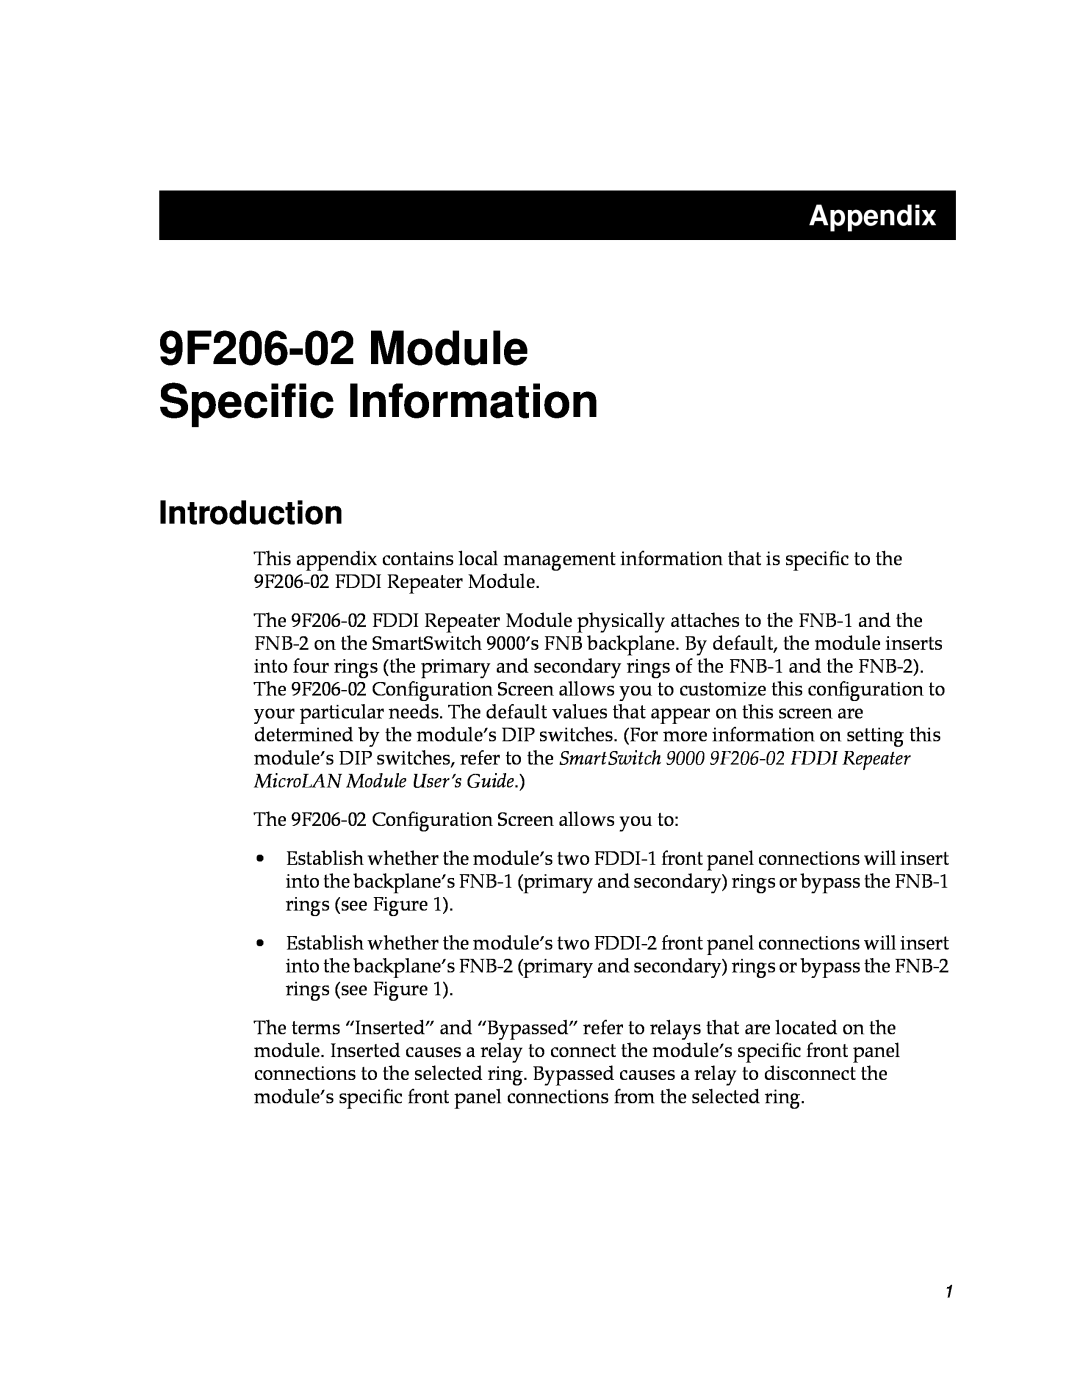 Cabletron Systems appendix Introduction, 9F206-02 Module Speciﬁc Information, Appendix 